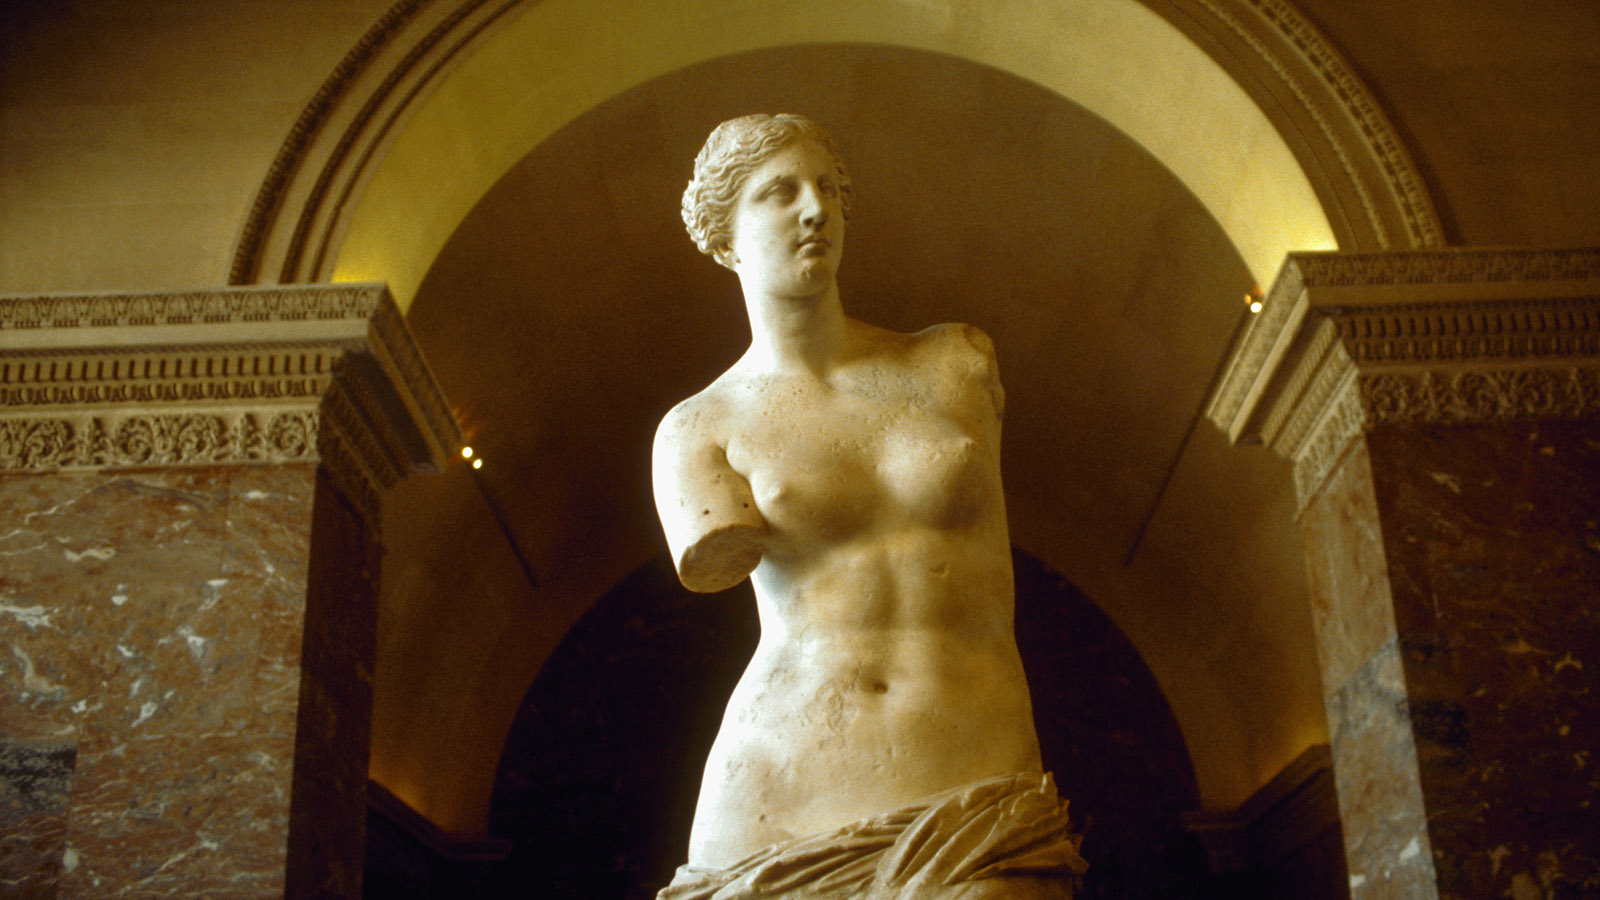 Venus de Milo (Aphrodite of Milos)